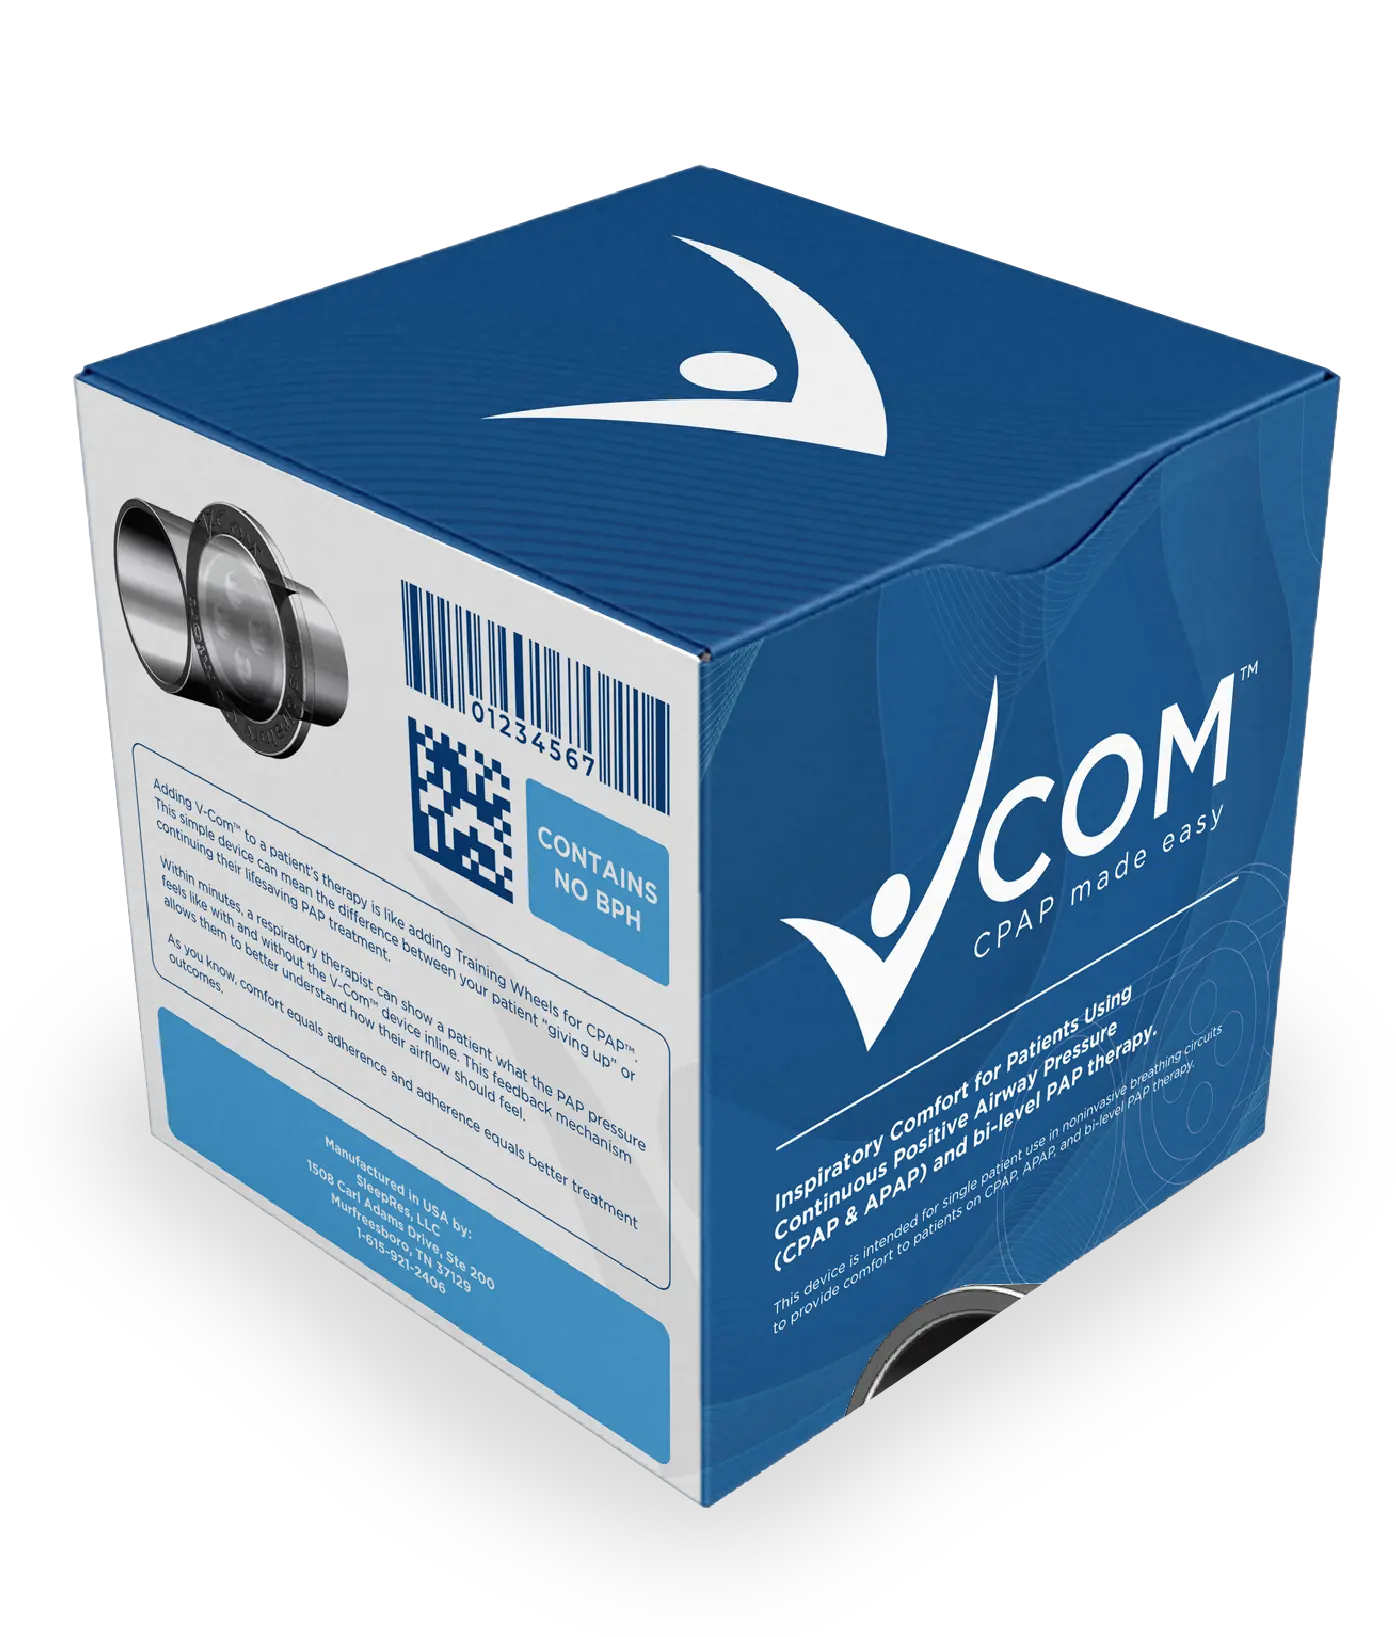 V-com for CPAP box